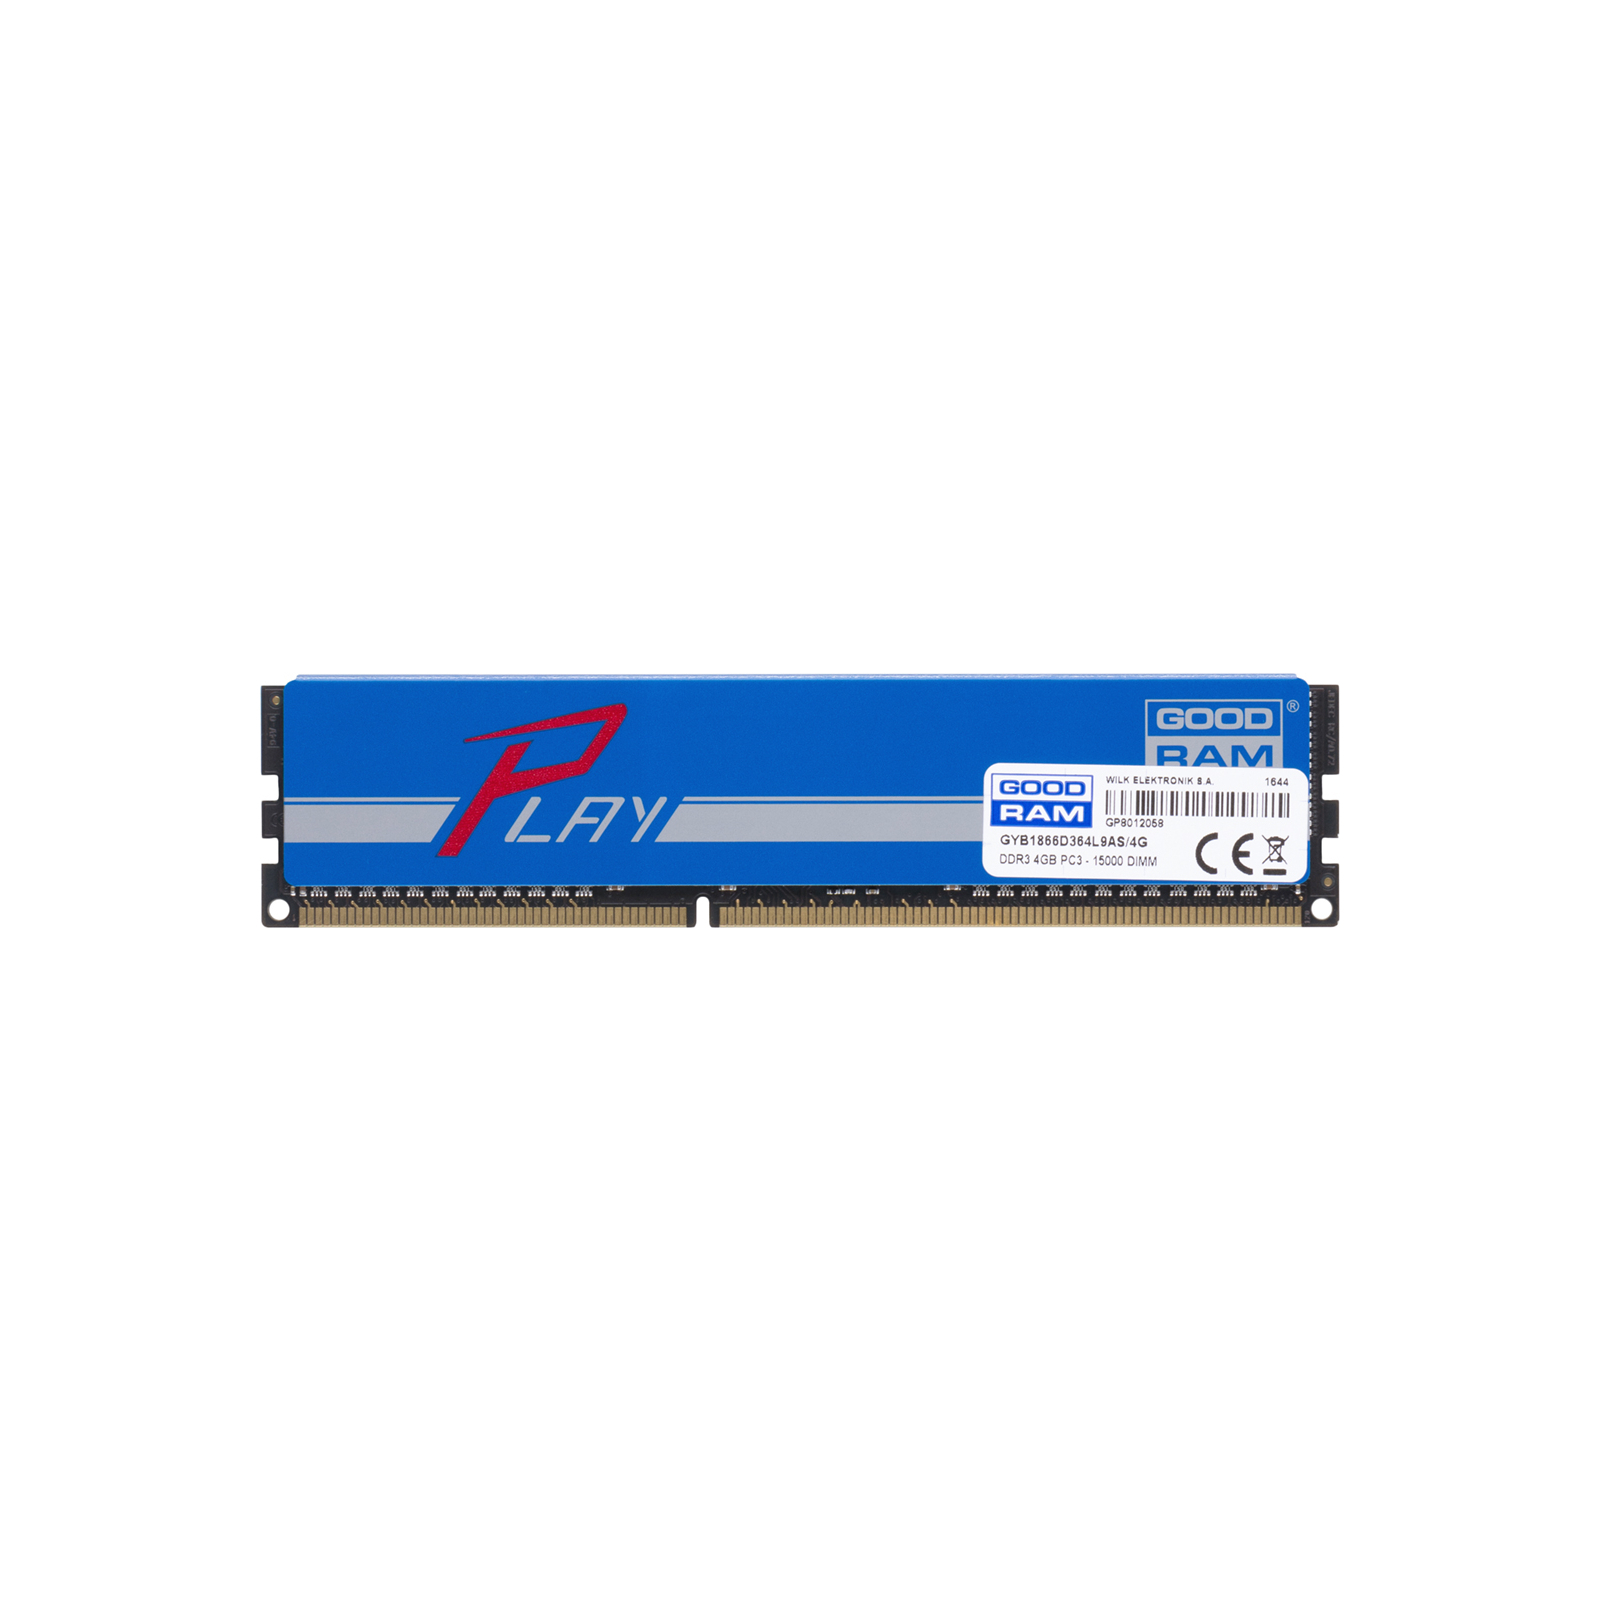 Модуль пам'яті для комп'ютера DDR3 4GB 1866 MHz Goodram (GYB1866D364L9A/4G / GYB1866D364L9AS/4G)